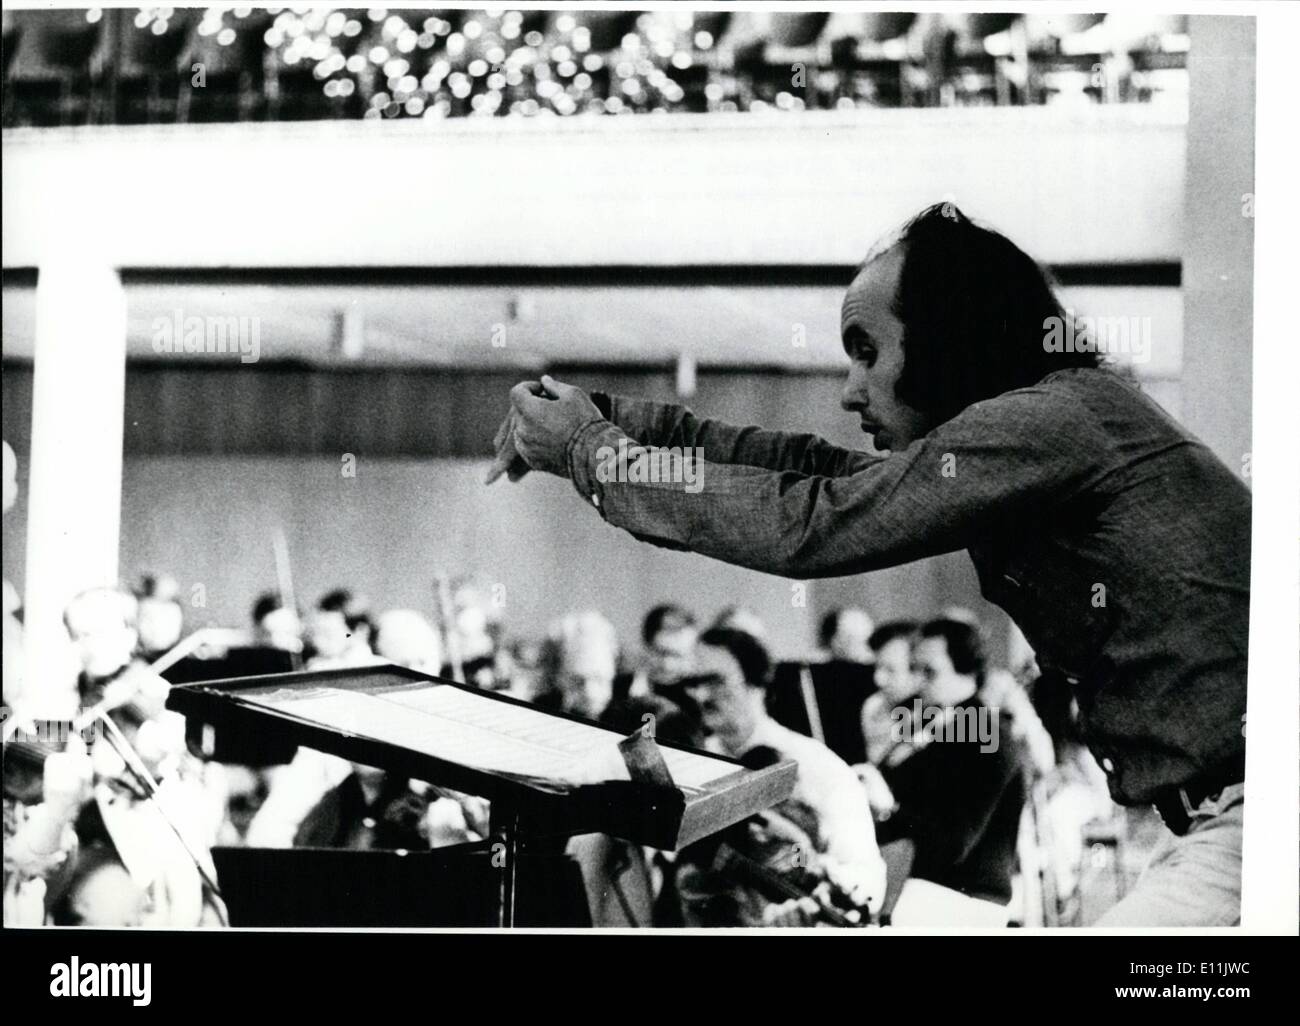 8. August 1978 - Richard-Wagner-Festspiele in Bayreuth/BRD für "Der Fliegende Holländer"...... (Der fliegende Holländer), nahm durch die Richard-Wagner-Festspiele 1978 in Bayreuth am 25. Juli eröffnet wird diese Probe (Bild) zu platzieren. Davies, rechts) ist - zum ersten Mal in Bayreuth - Dirigent "der fliegende Holländer". Amerikaner geboren Davies ist Leiter des Saint Paul Chamber Orchestra of St. Paul/USA, die internationale Bedeutung und den Erfolg von ihm wurde; Außerdem ist er davon auch in Stuttgart/Bundesrepublik Deutschland - und jetzt in Bayreuth arbeiten! Stockfoto